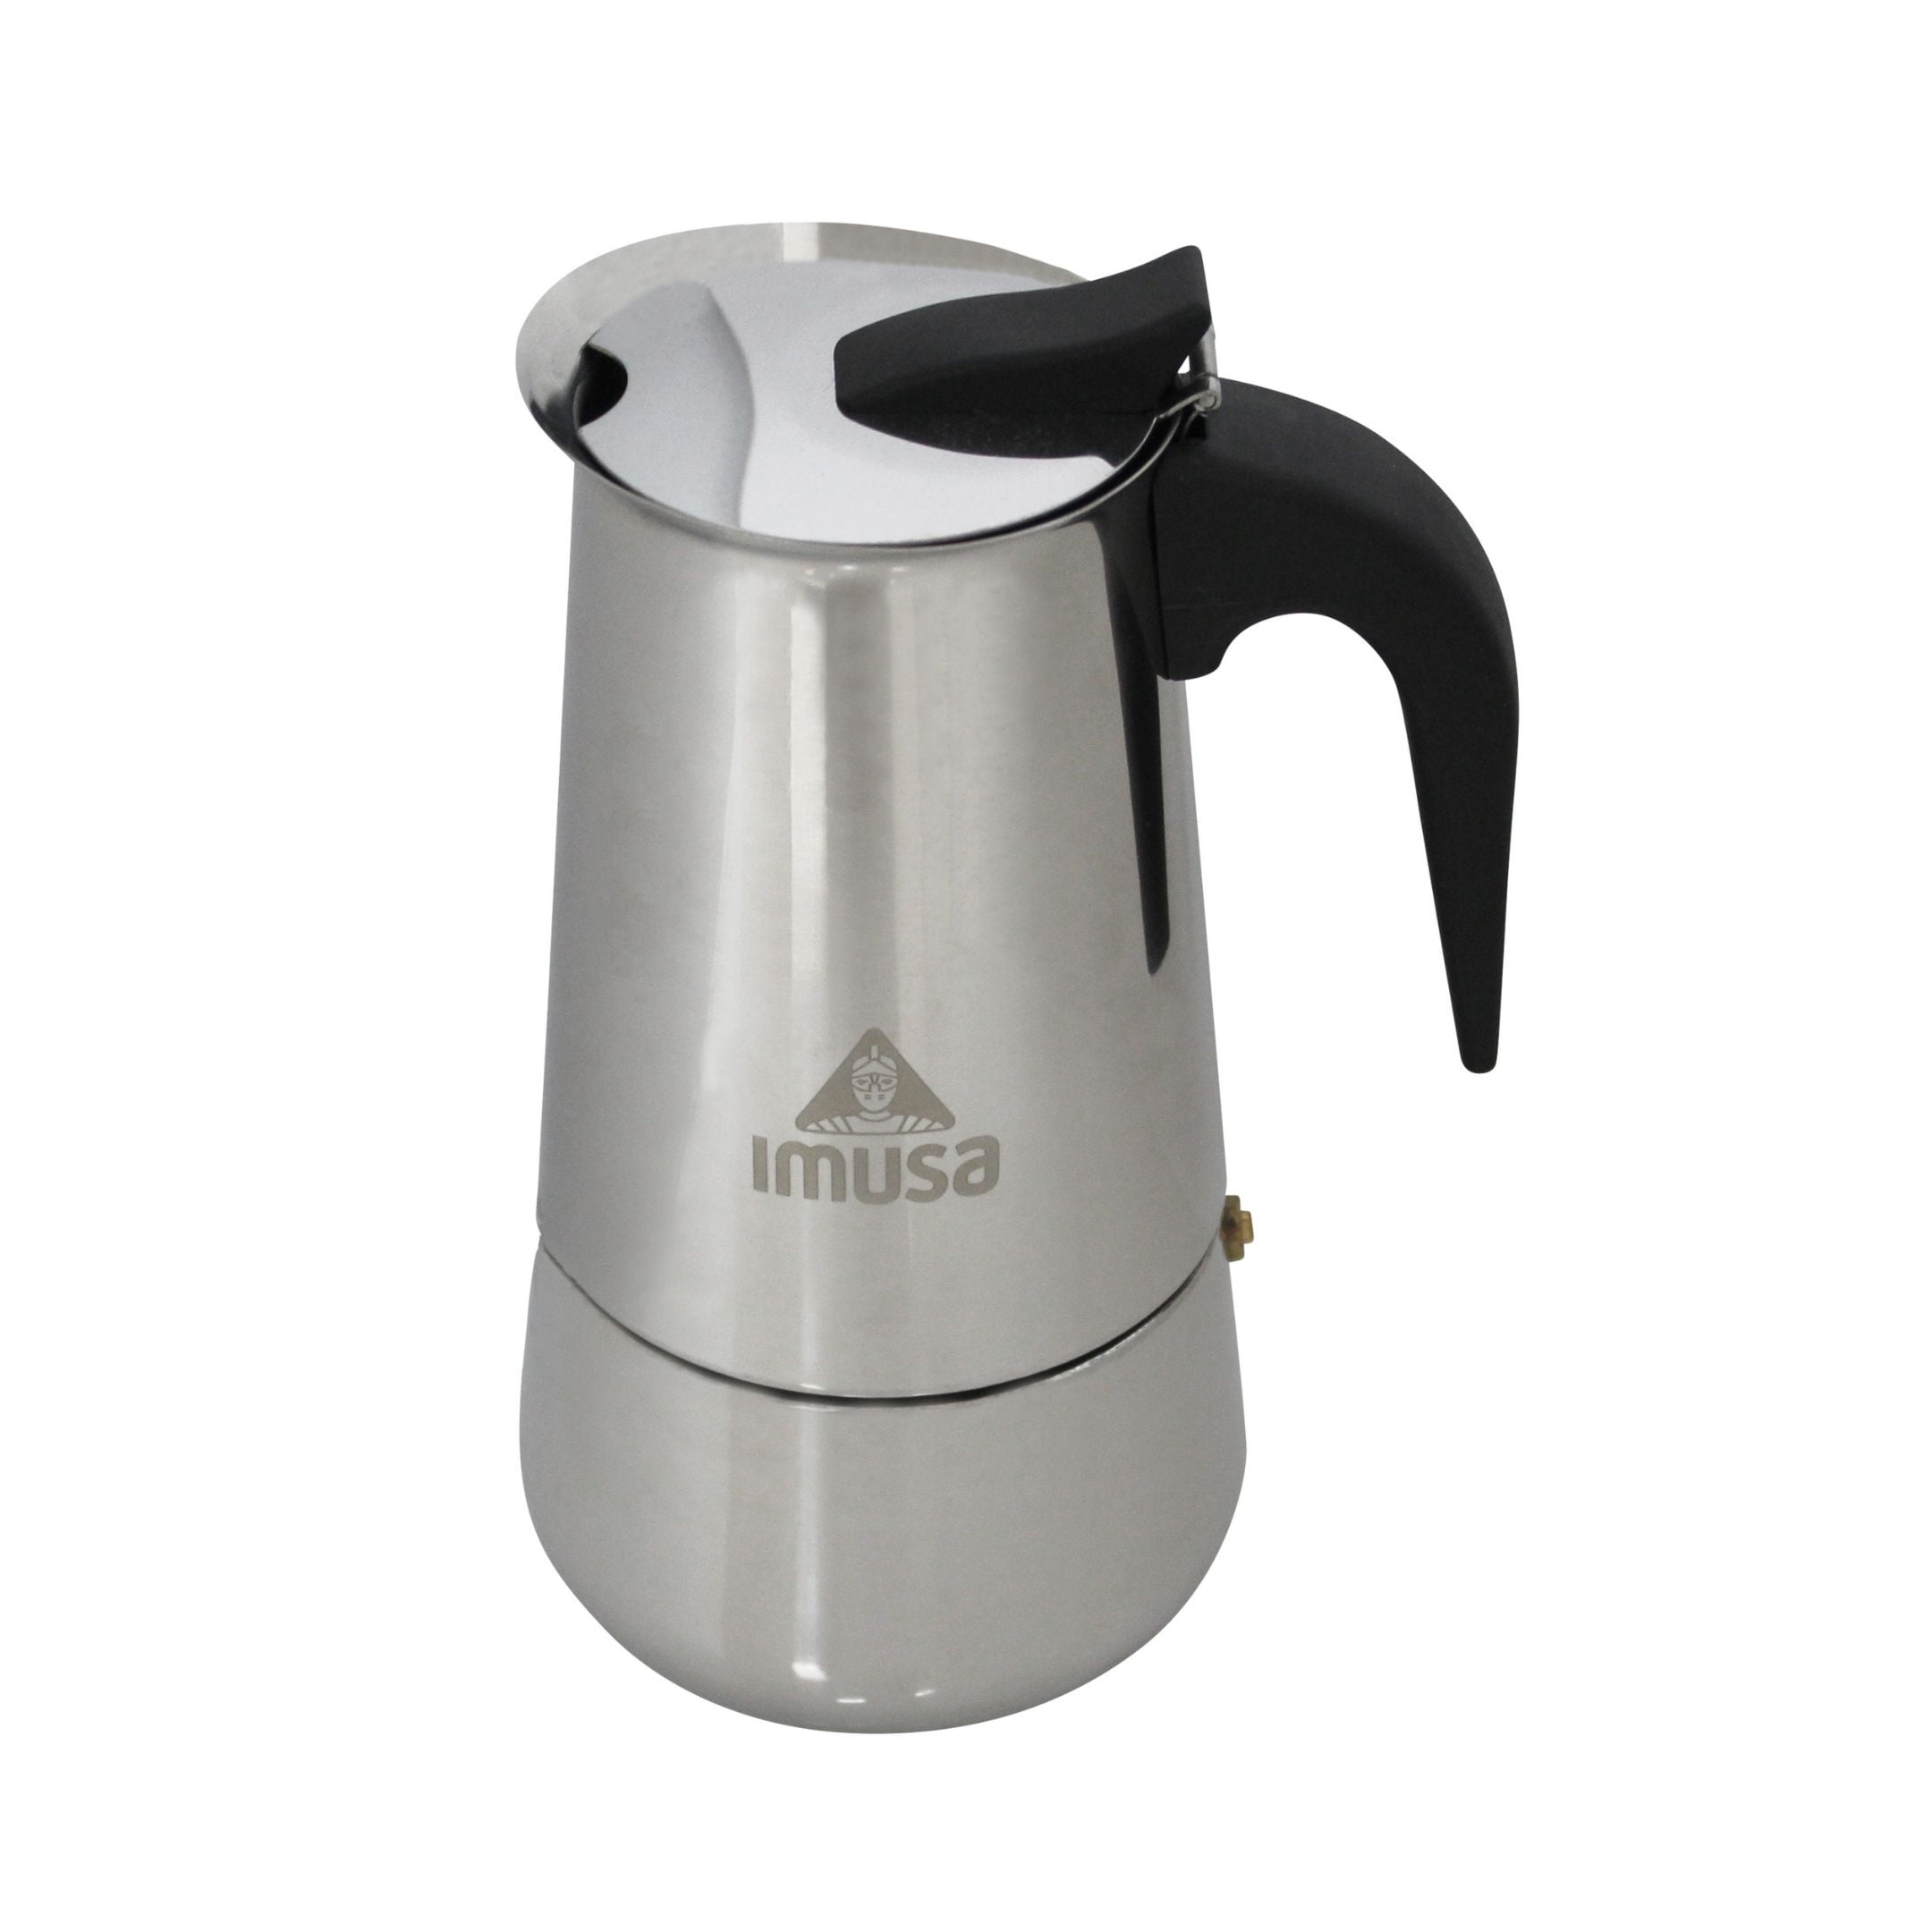  Imusa USA Aluminum Stovetop 6-cup Espresso Maker (B120